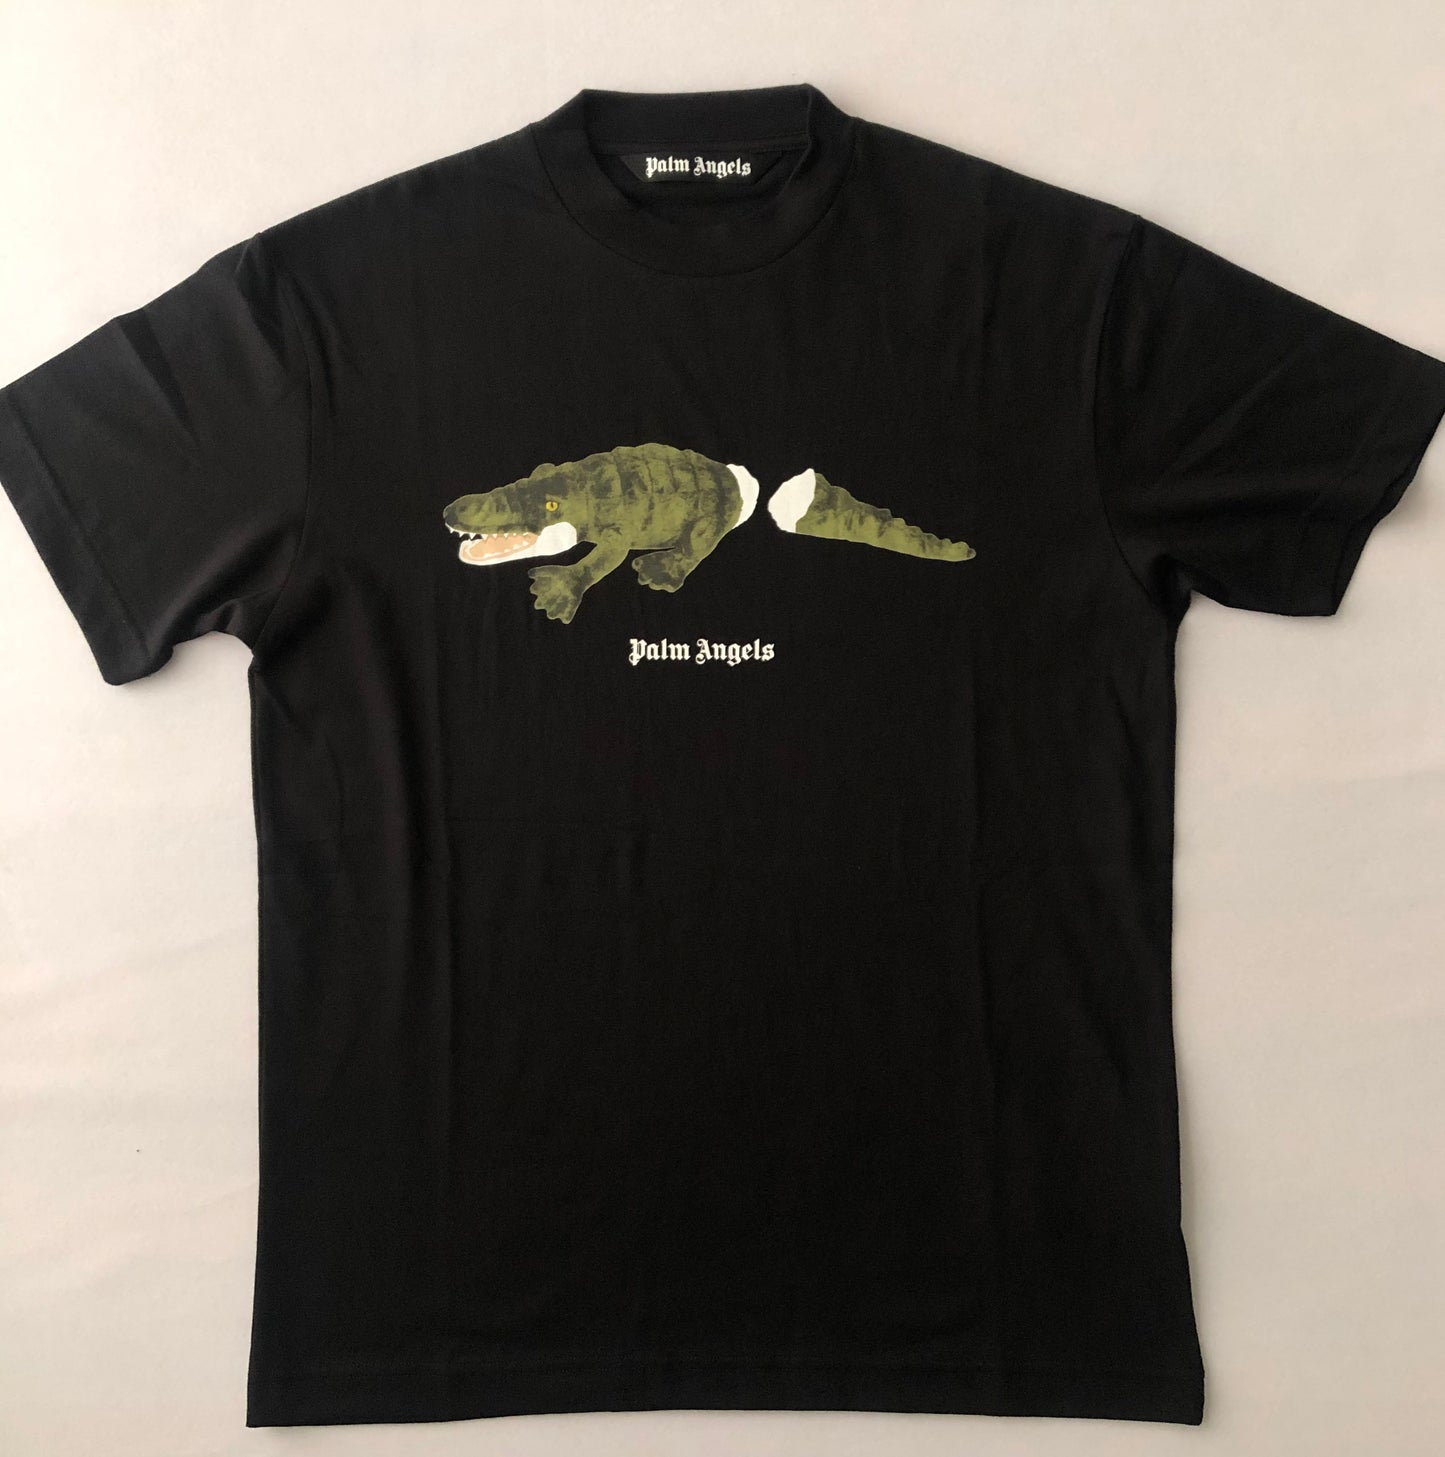 Palm Angels 'Crocodile' T-shirt